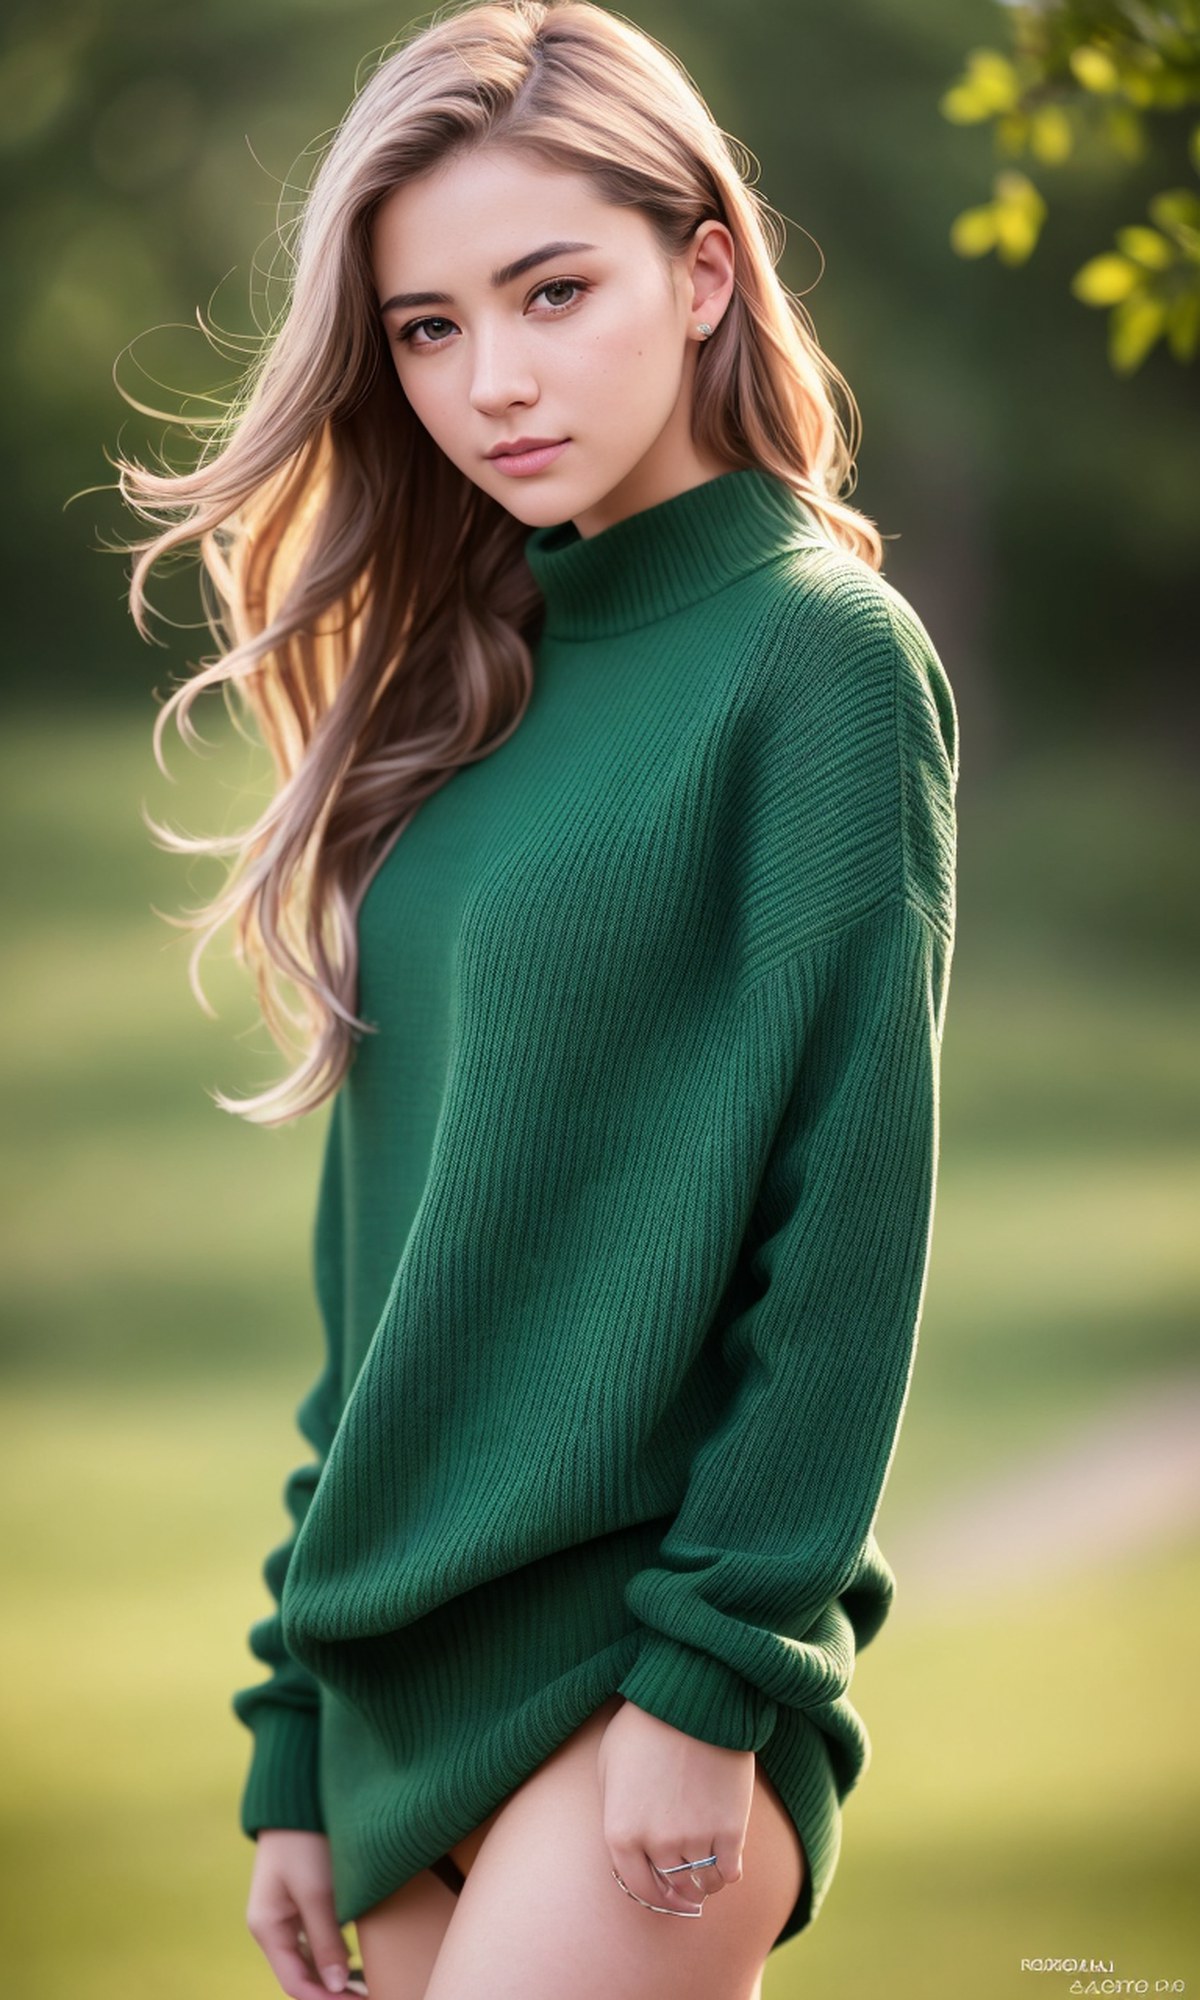 AIModel Vol 015 Wearing A Green Sweater 0015 1484447525.jpg